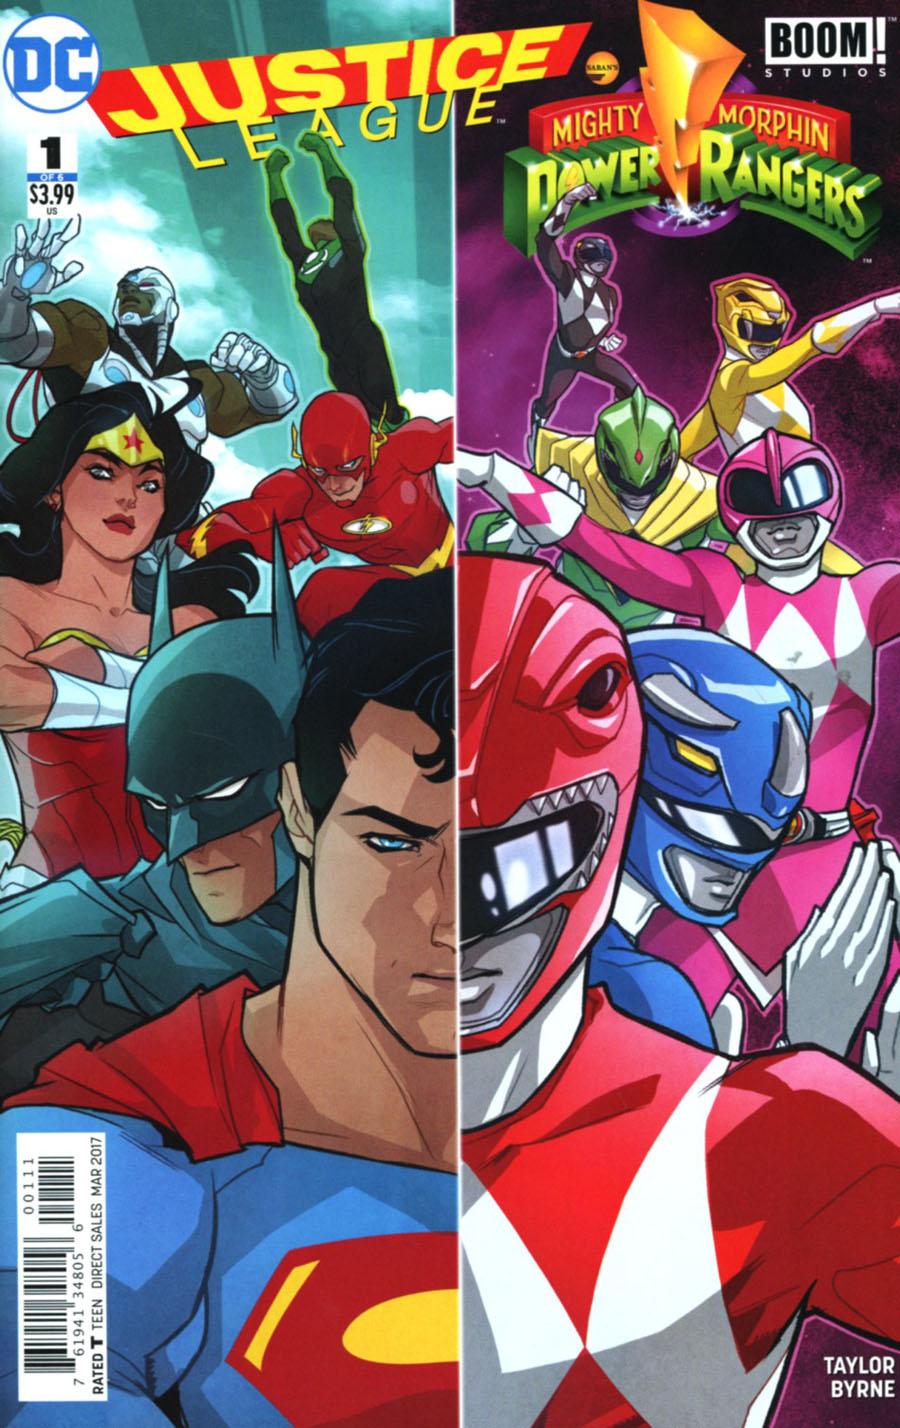 Justice League Power Rangers Vol. 1 #1